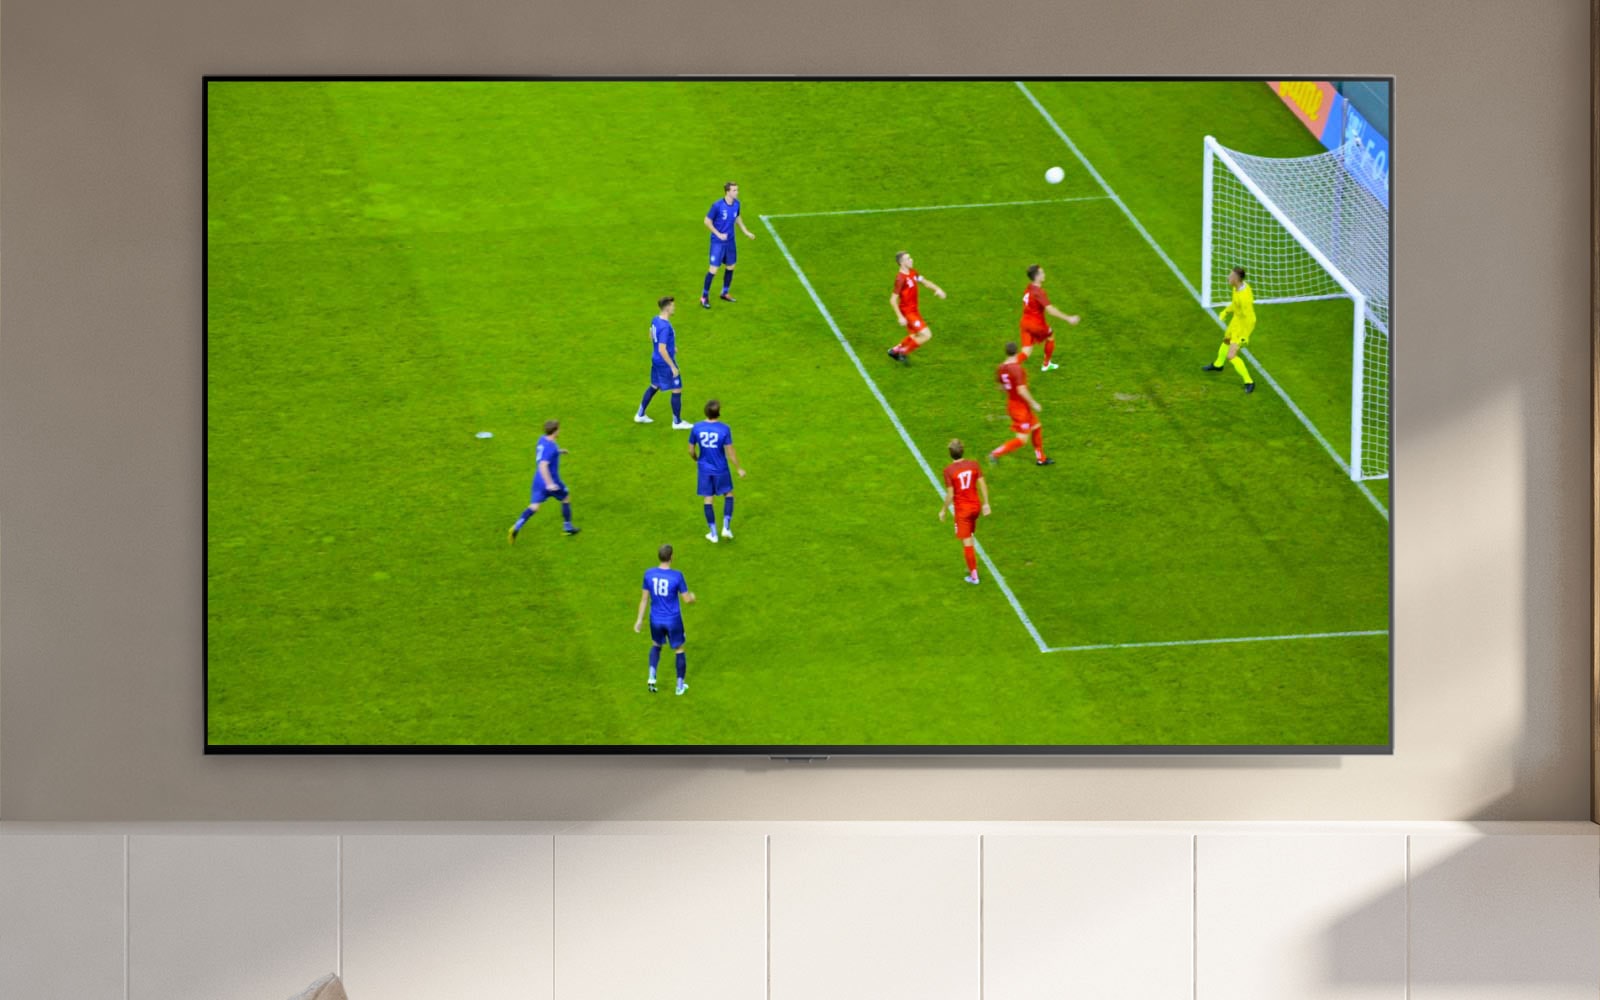 Televizijski zaslon prikazuje nogometni stadion in igralca, ki doseže gol (predvajaj video).